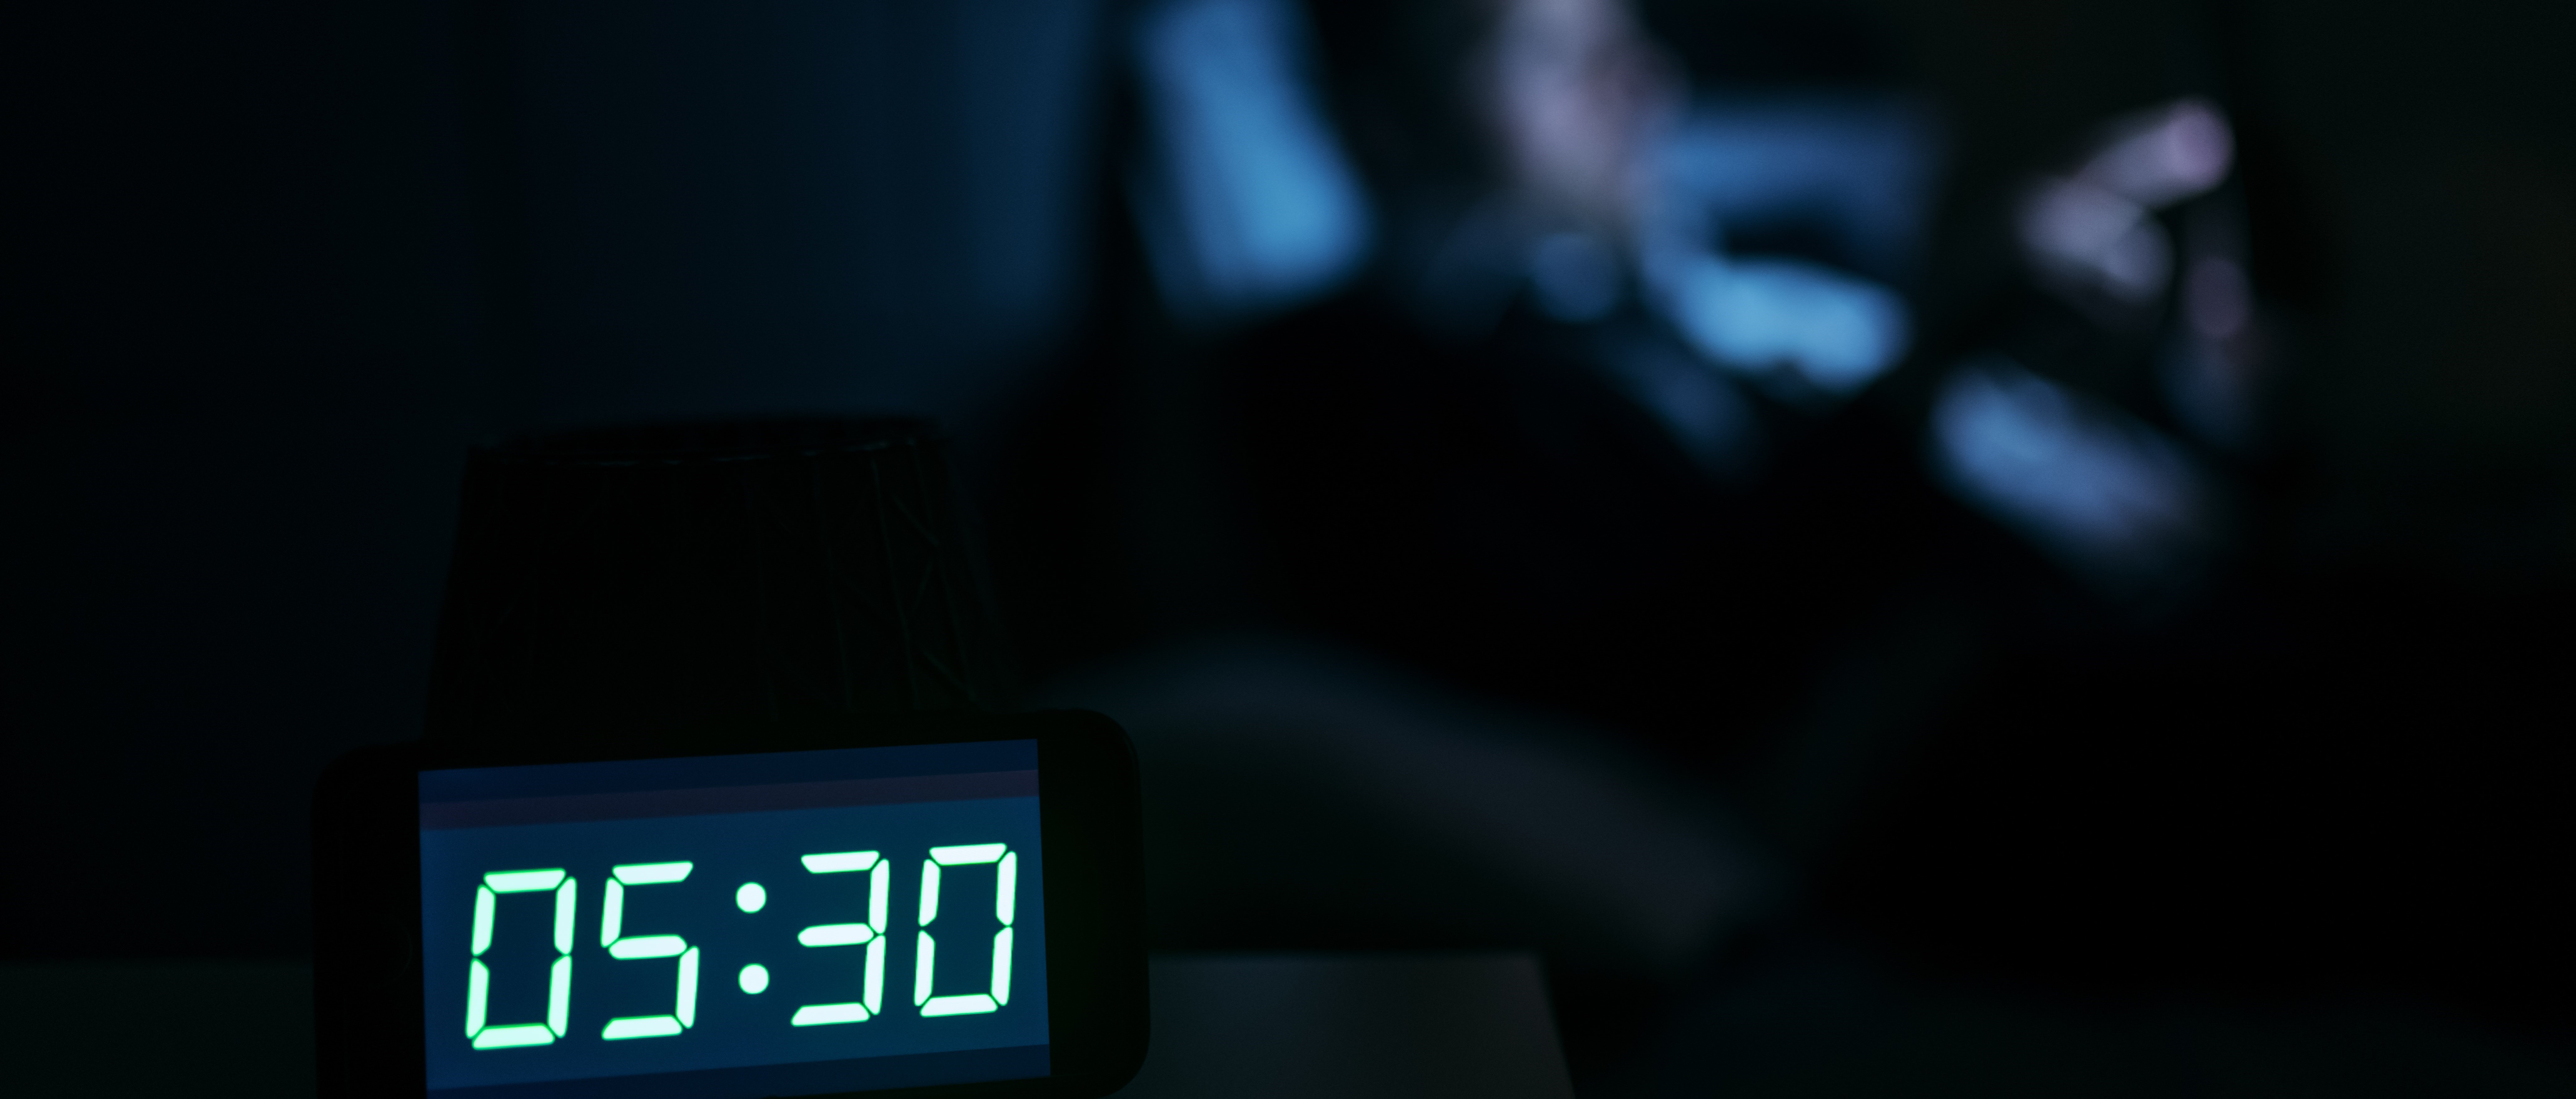 Bilden visar en digital klocka i ett mörkt rum. Klockan visar 05:30. I bakgrunden syns konturerna av en person som sitter framför en skärm.